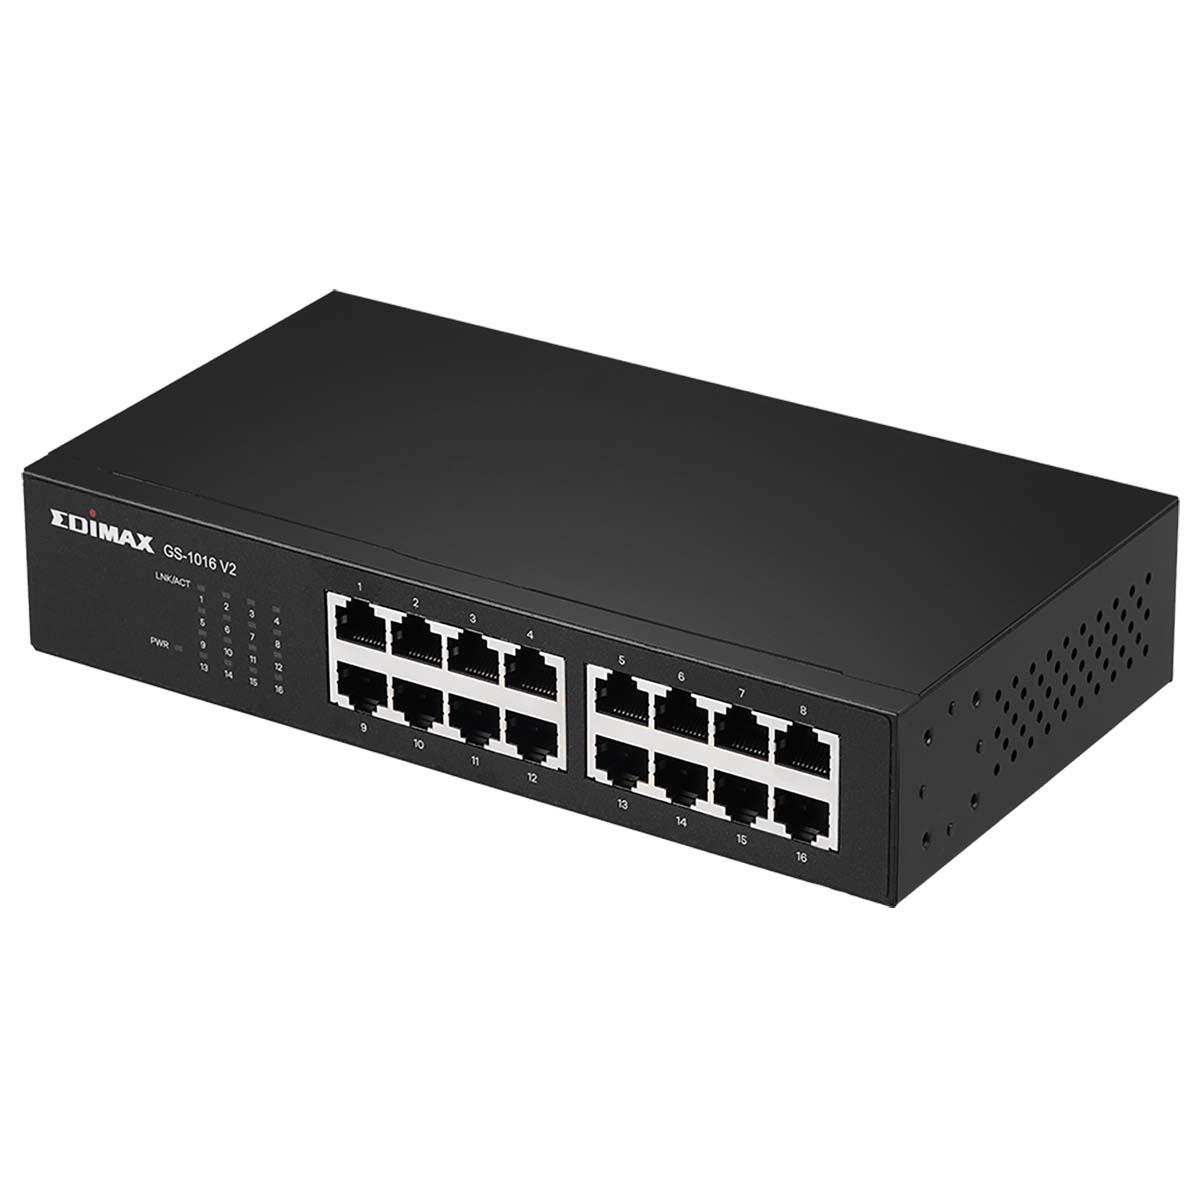 Commutateur réseau edimax gigabit 16 ports 1000m/bps full duplex